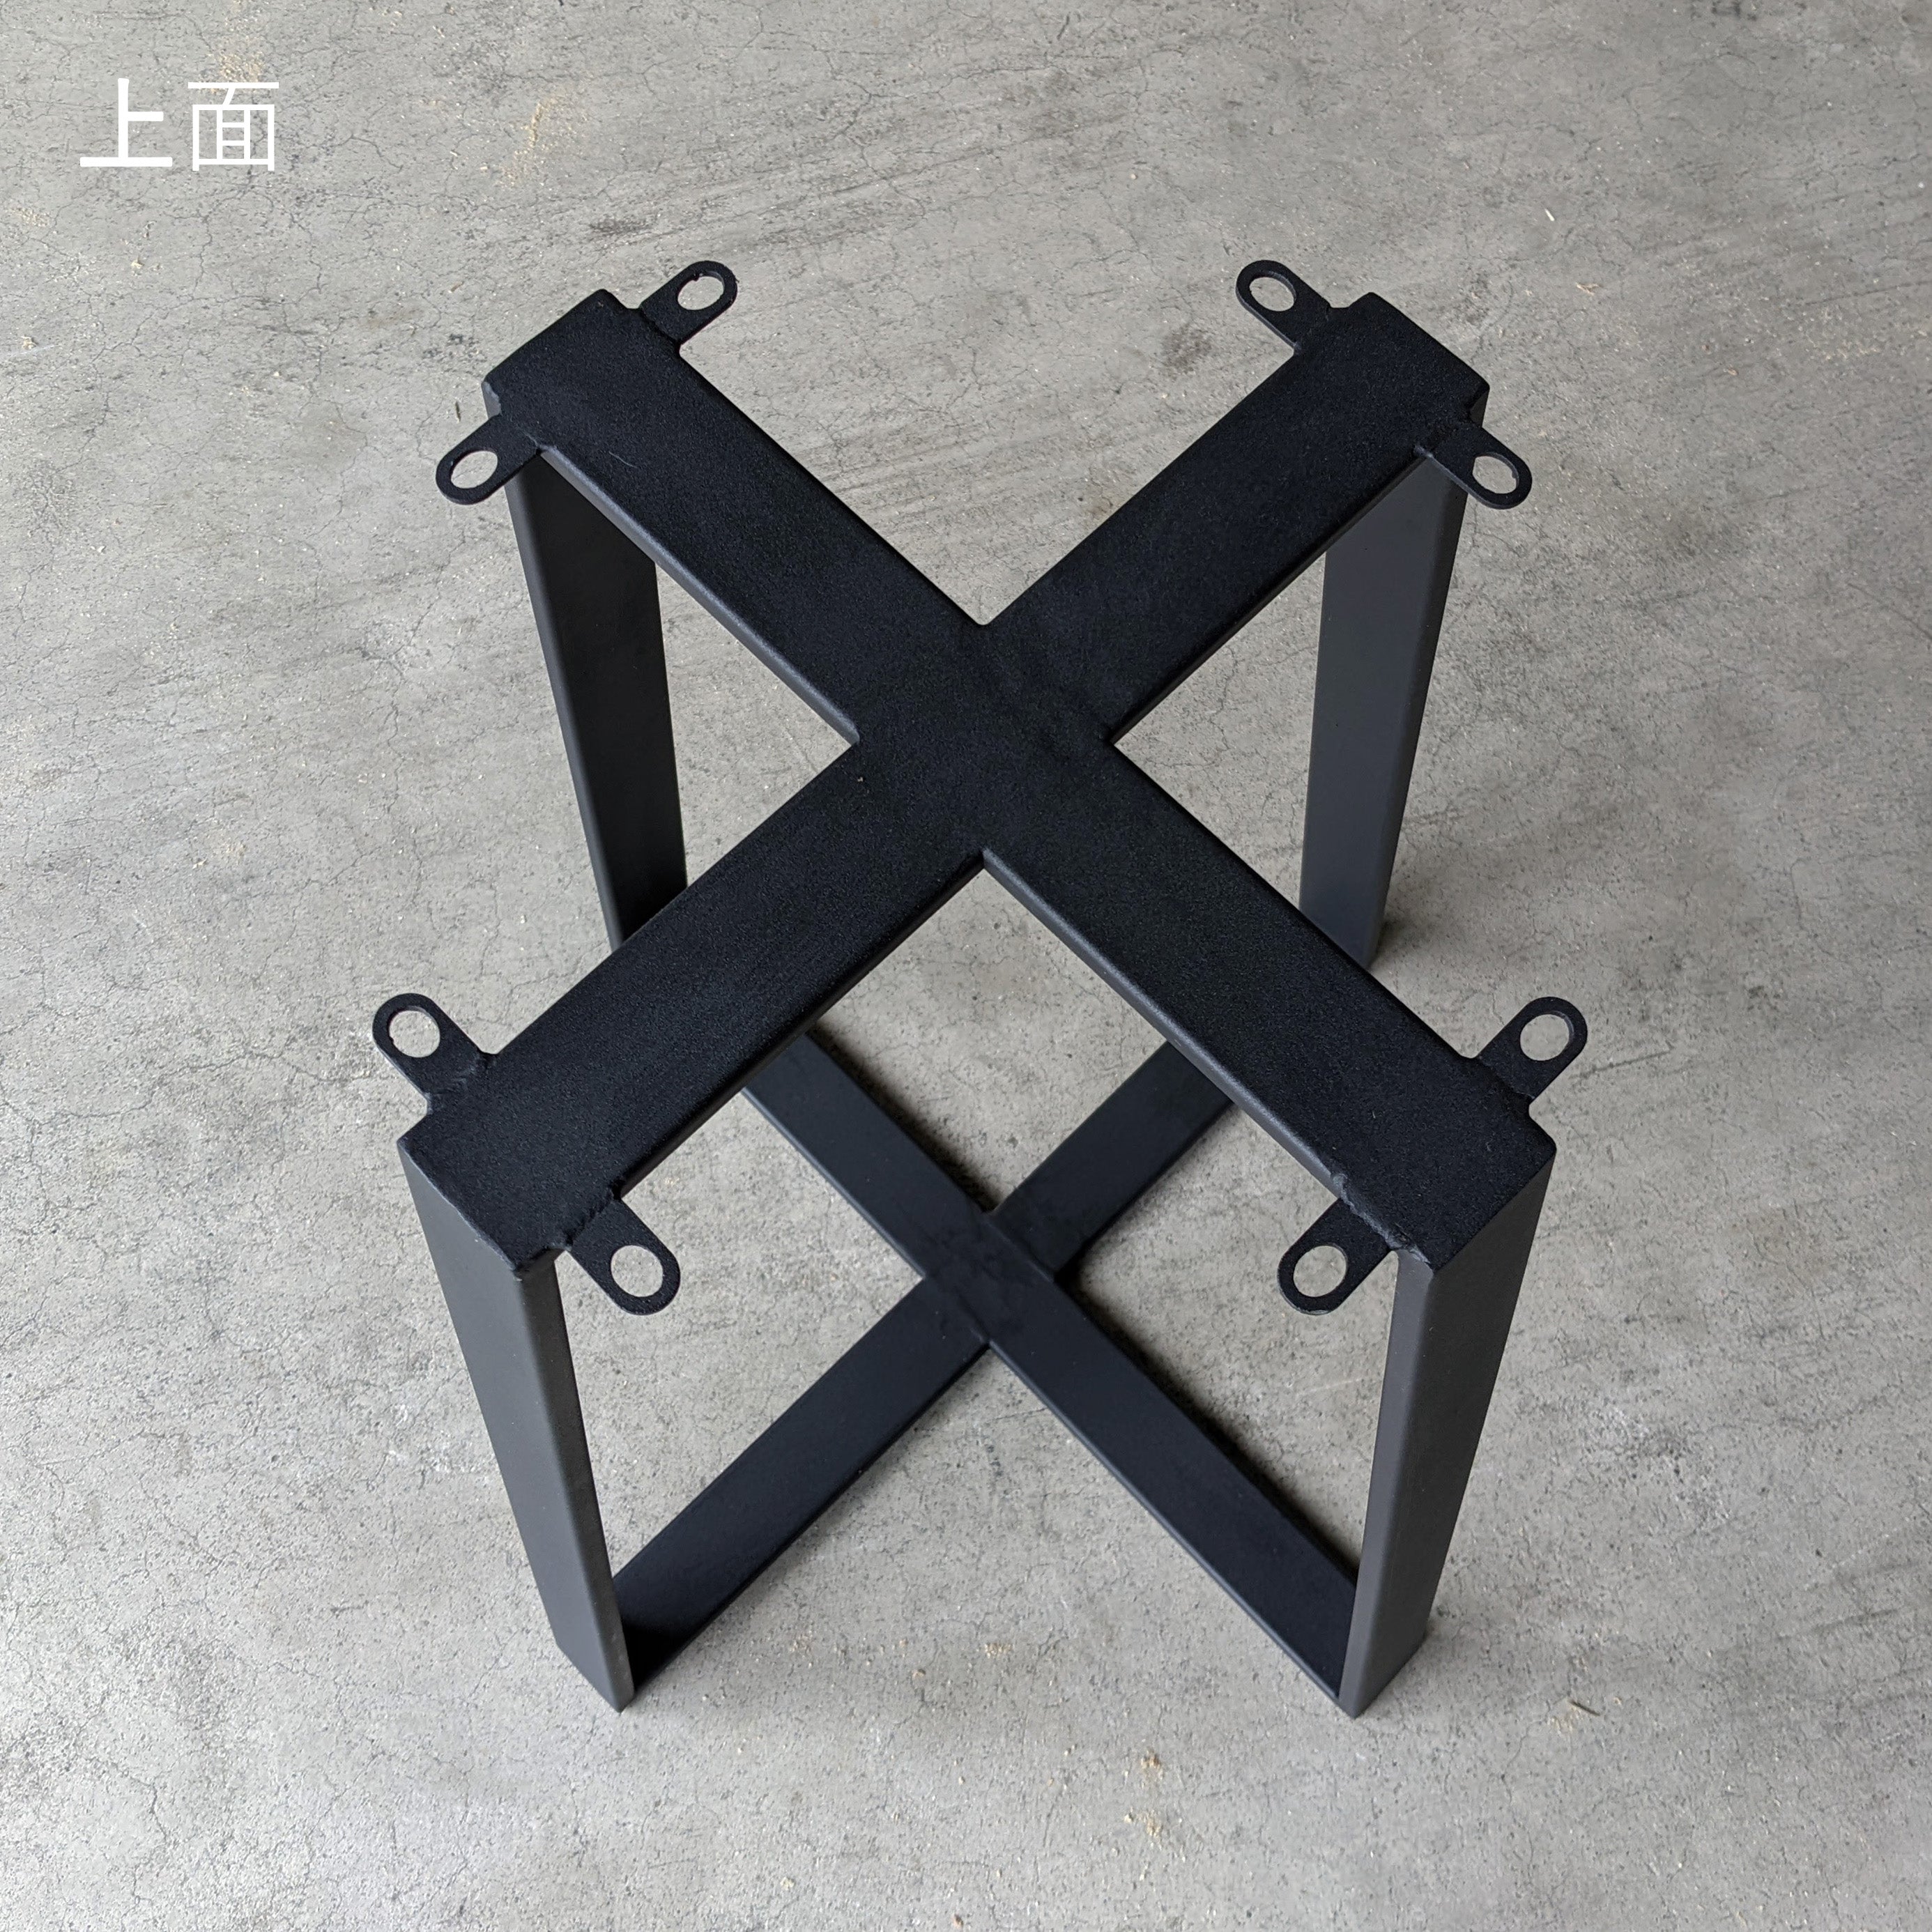 テーブル脚 サイドX型 奥行450×高さ530mm - 清水材木店